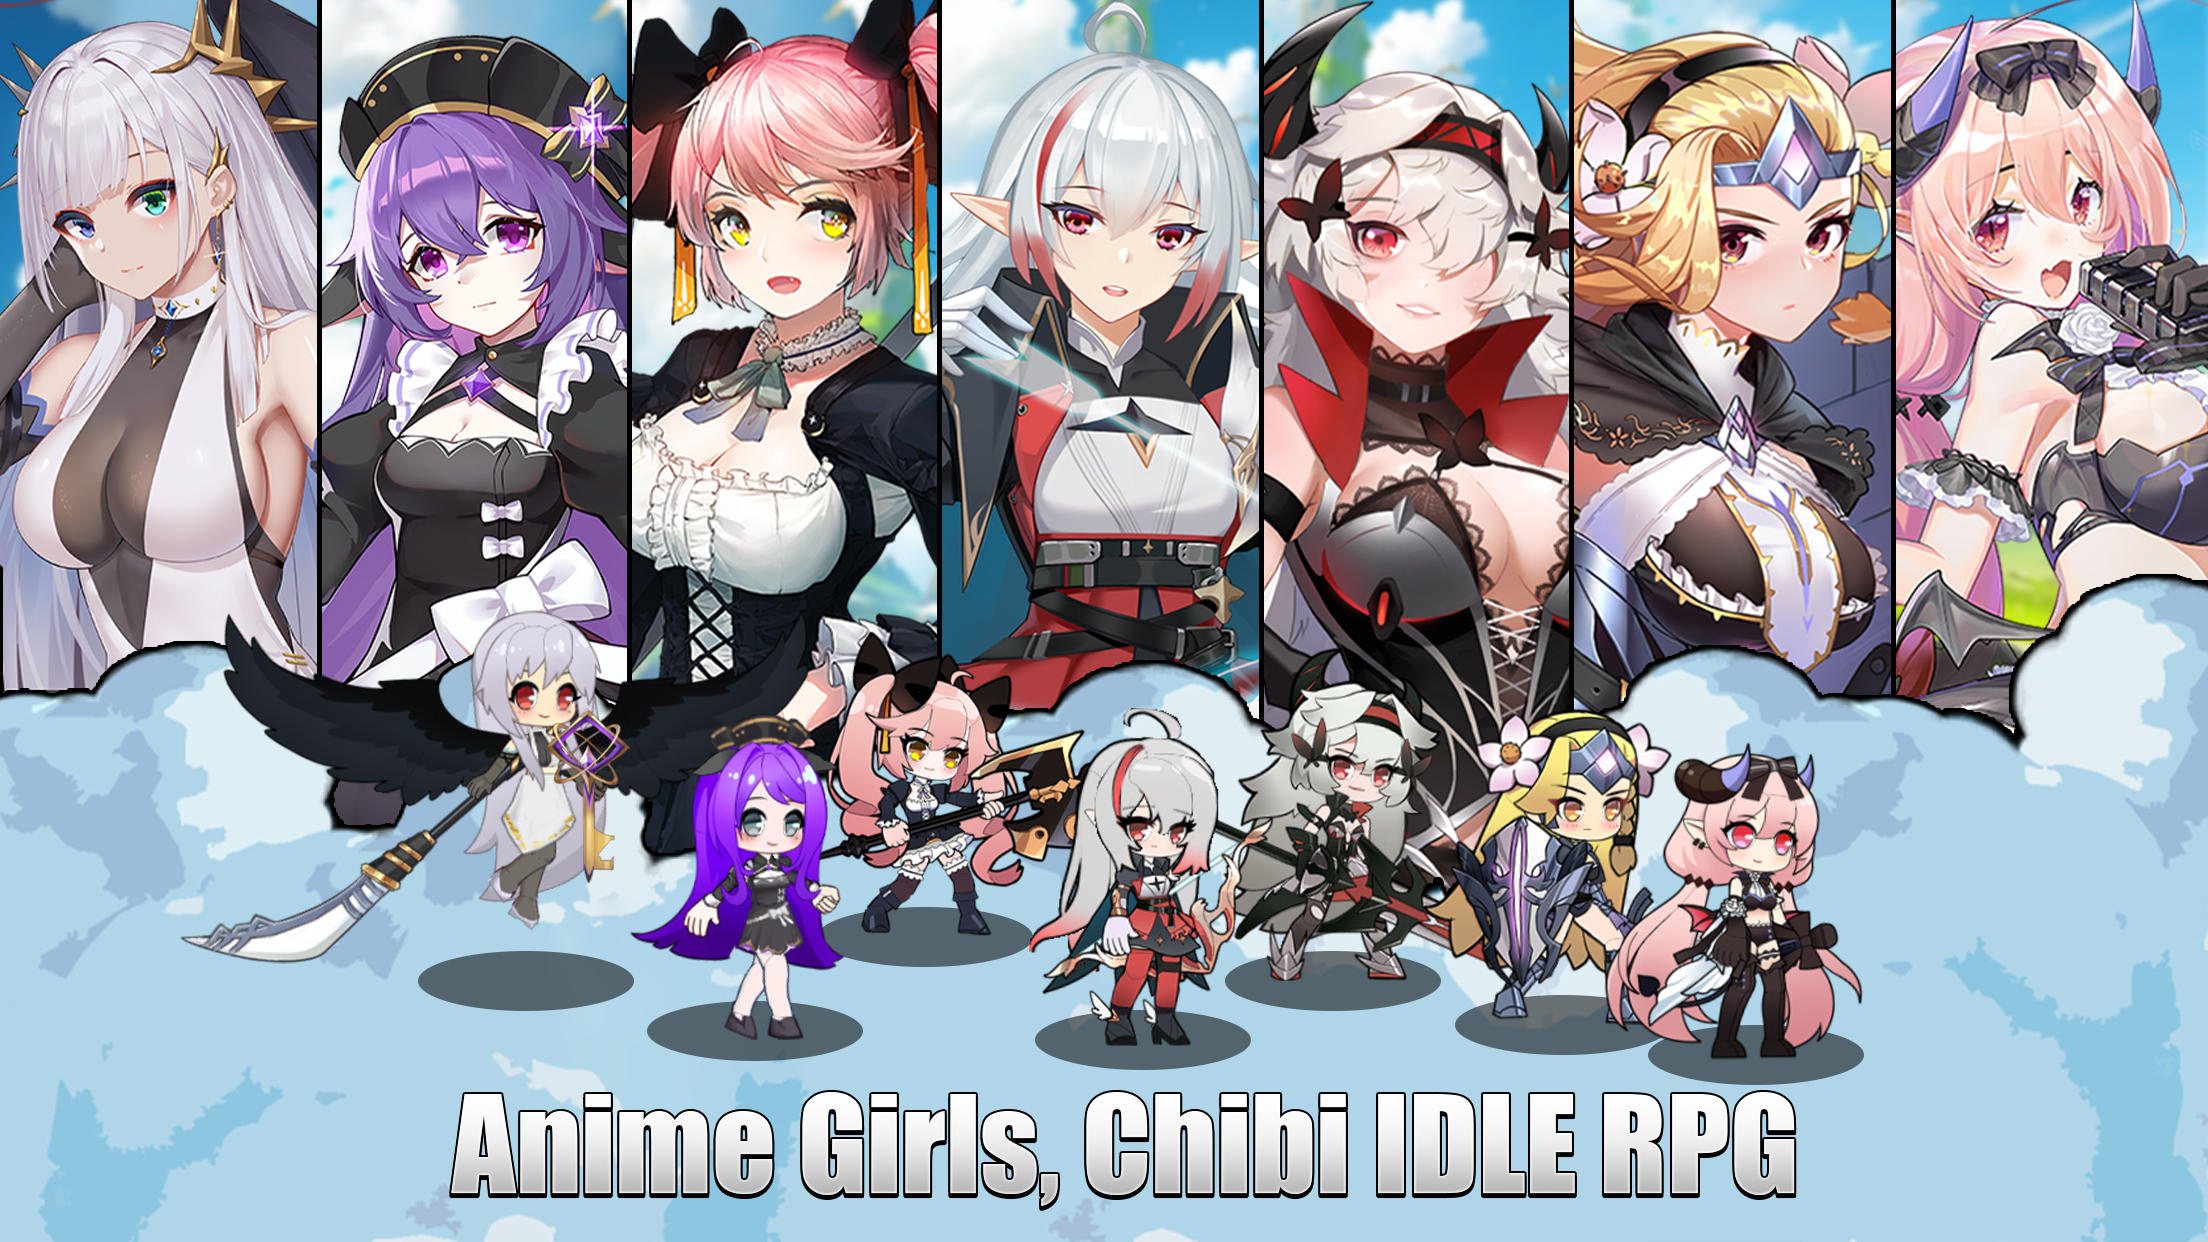 Ark Battle Girls - Idle RPG screenshot game